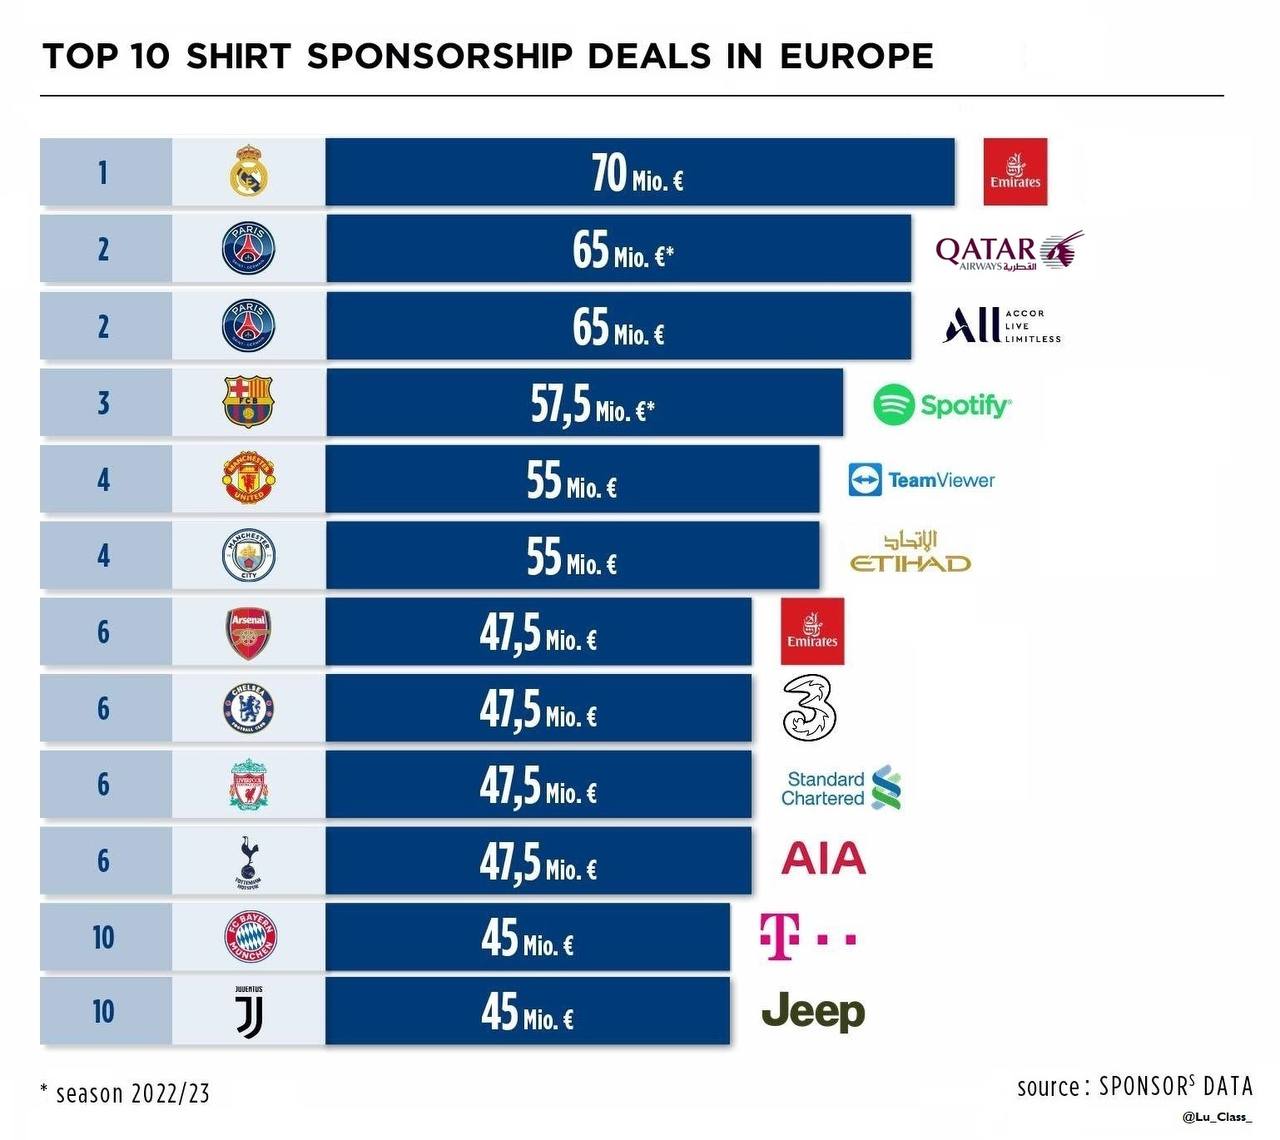 Большие спонсоры. Самые популярные Спонсоры в футболе. Контракты футбольных клубов с спонсорами. Самые дорогие Спонсоры в футболе. Топ самых дорогих титульных спонсоров в футболе.